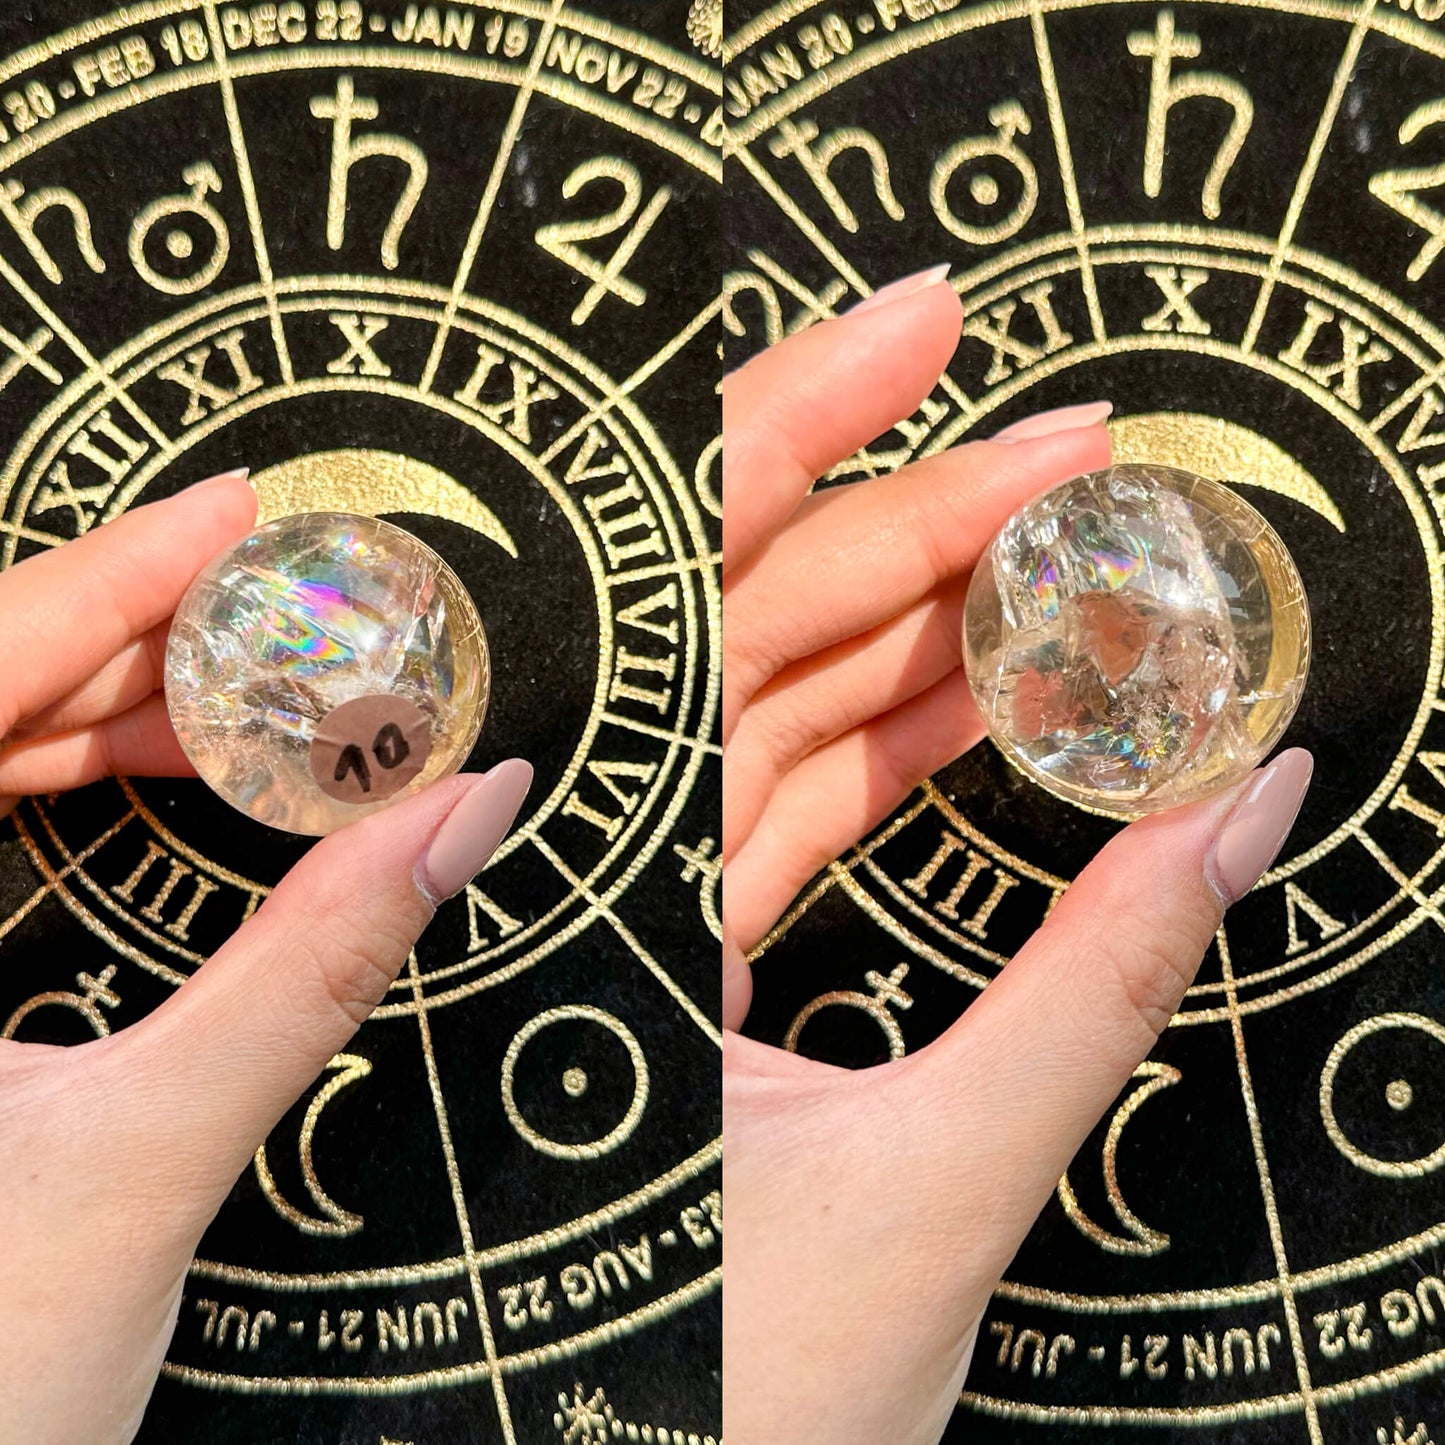 Natural Rainbow Clear Quartz Sphere/Small Clear Quartz Sphere/Crystal Sphere/Chakra Healing/AAA